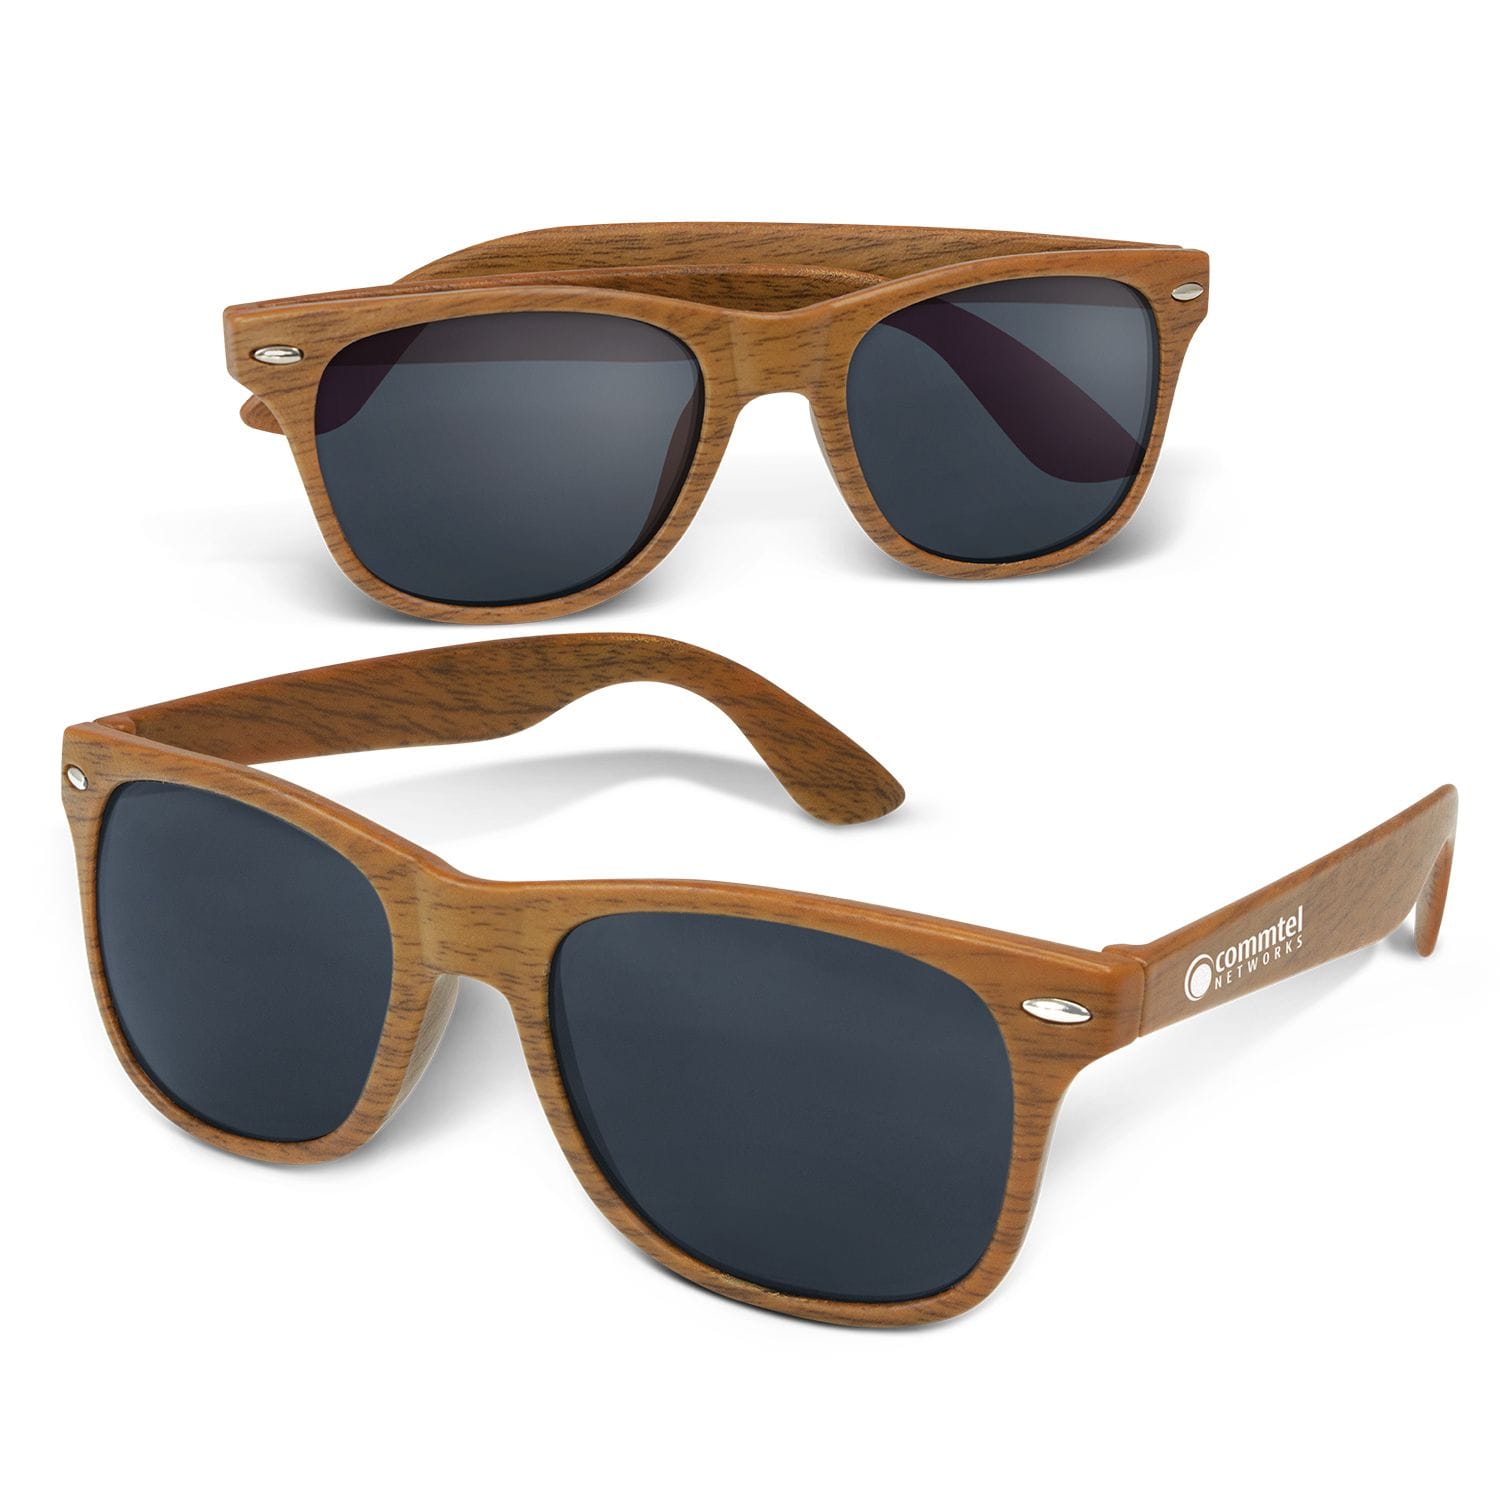 Malibu heritage sunglasses